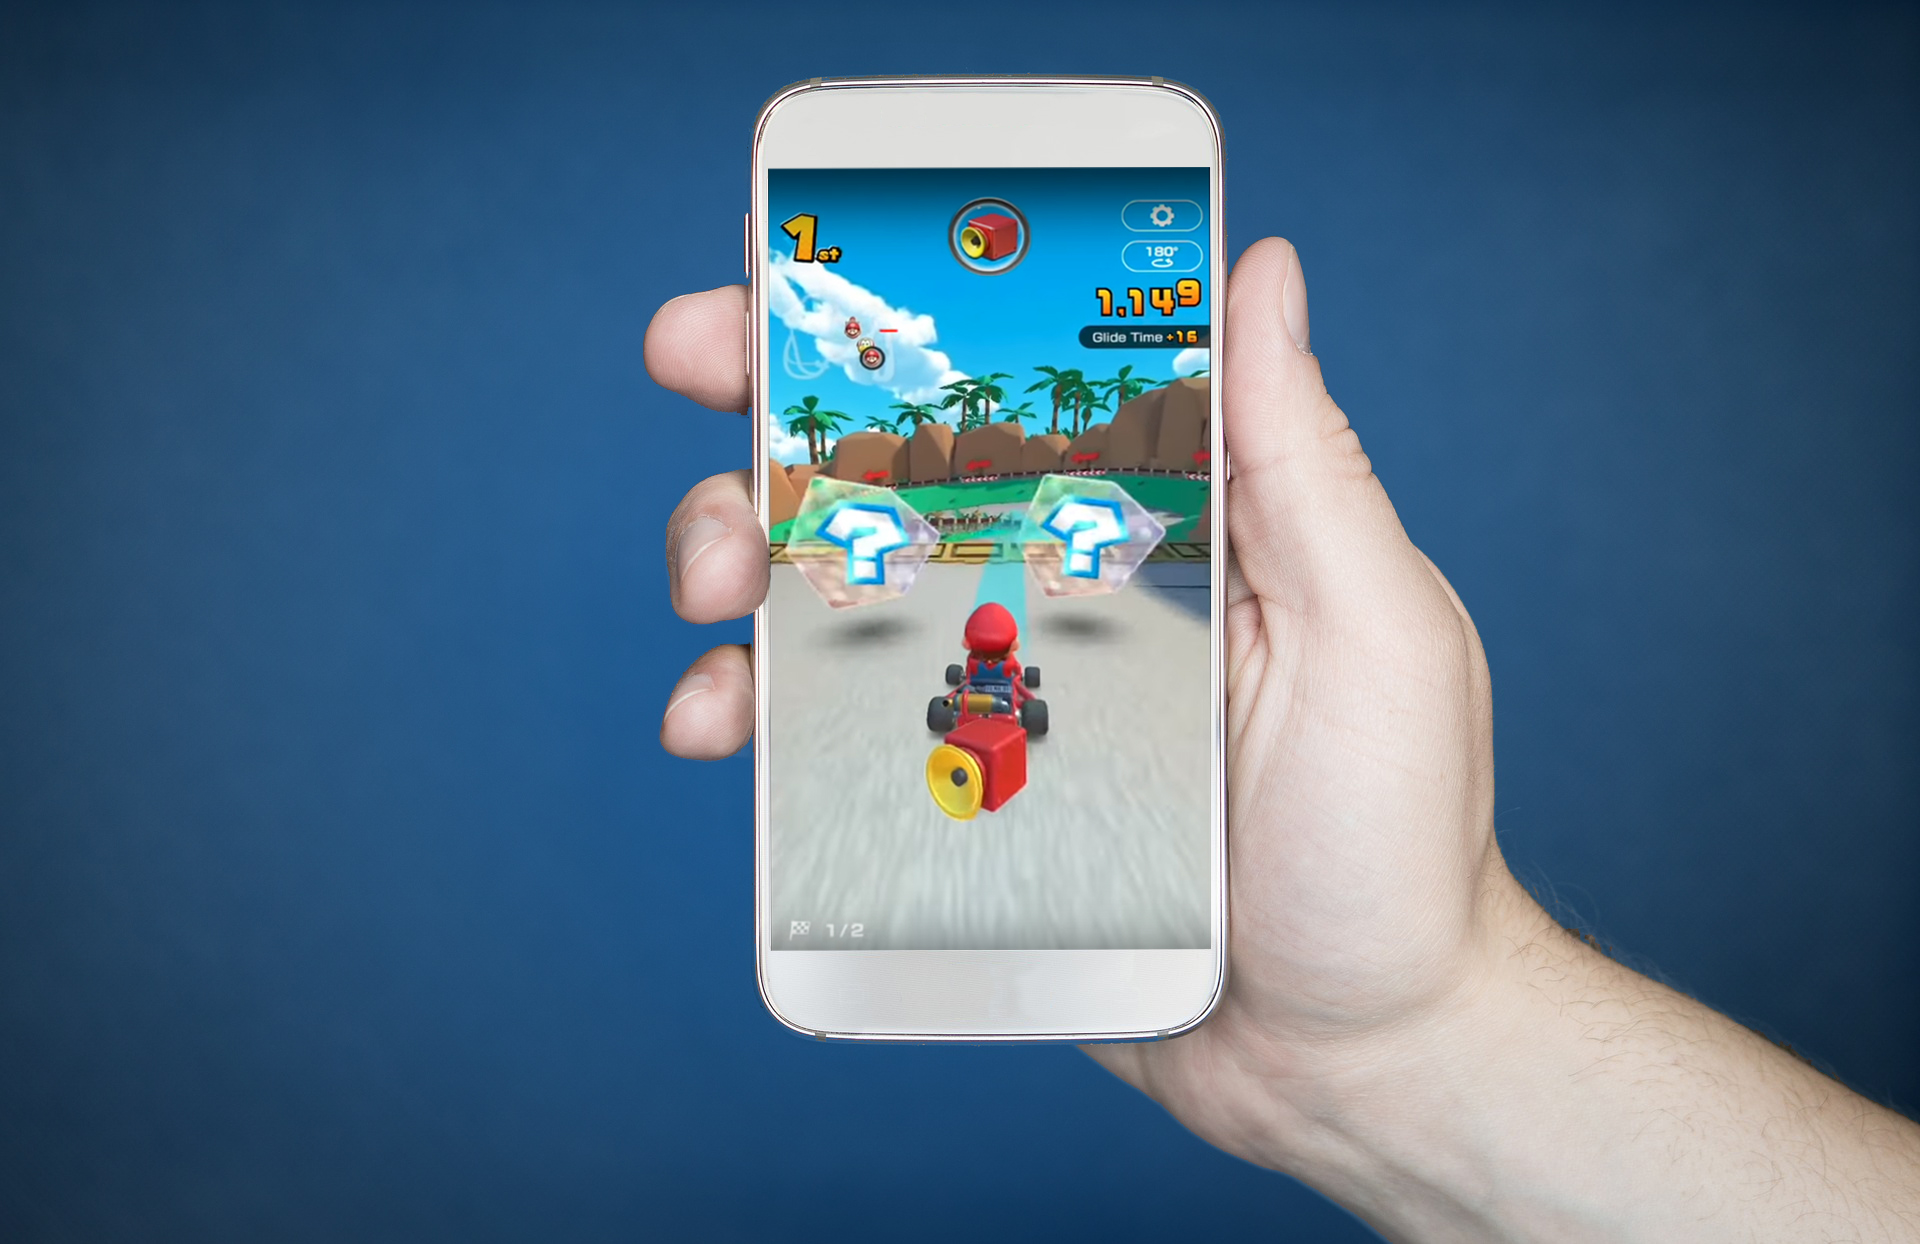 Mario Kart Tour na App Store